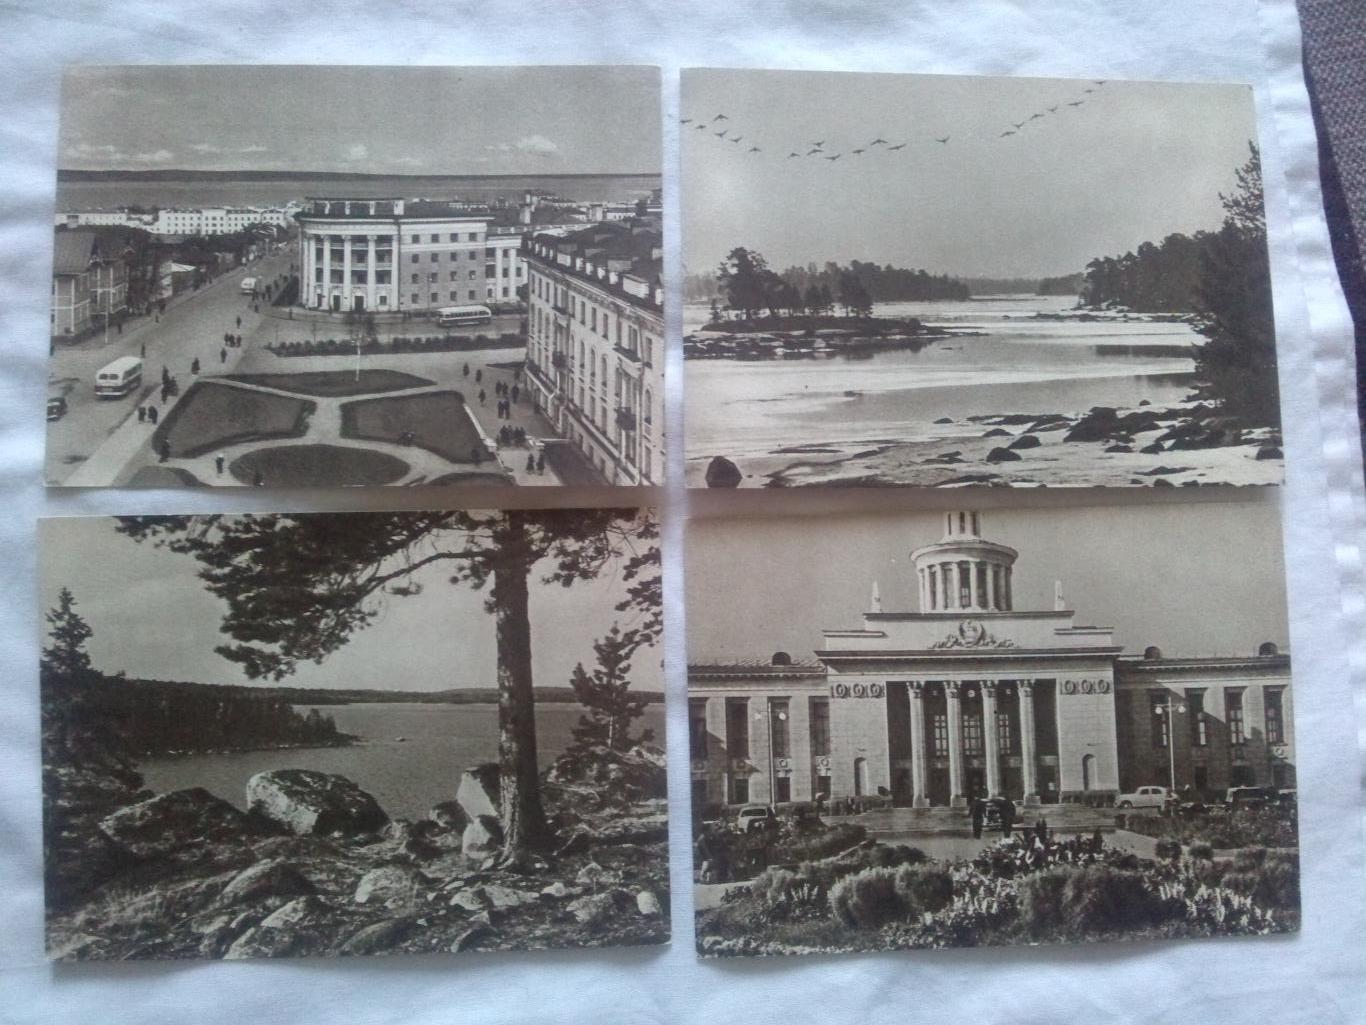 Памятные места СССР : По Карелии 1956 г. (Изогиз) полный набор - 15 открыток 2